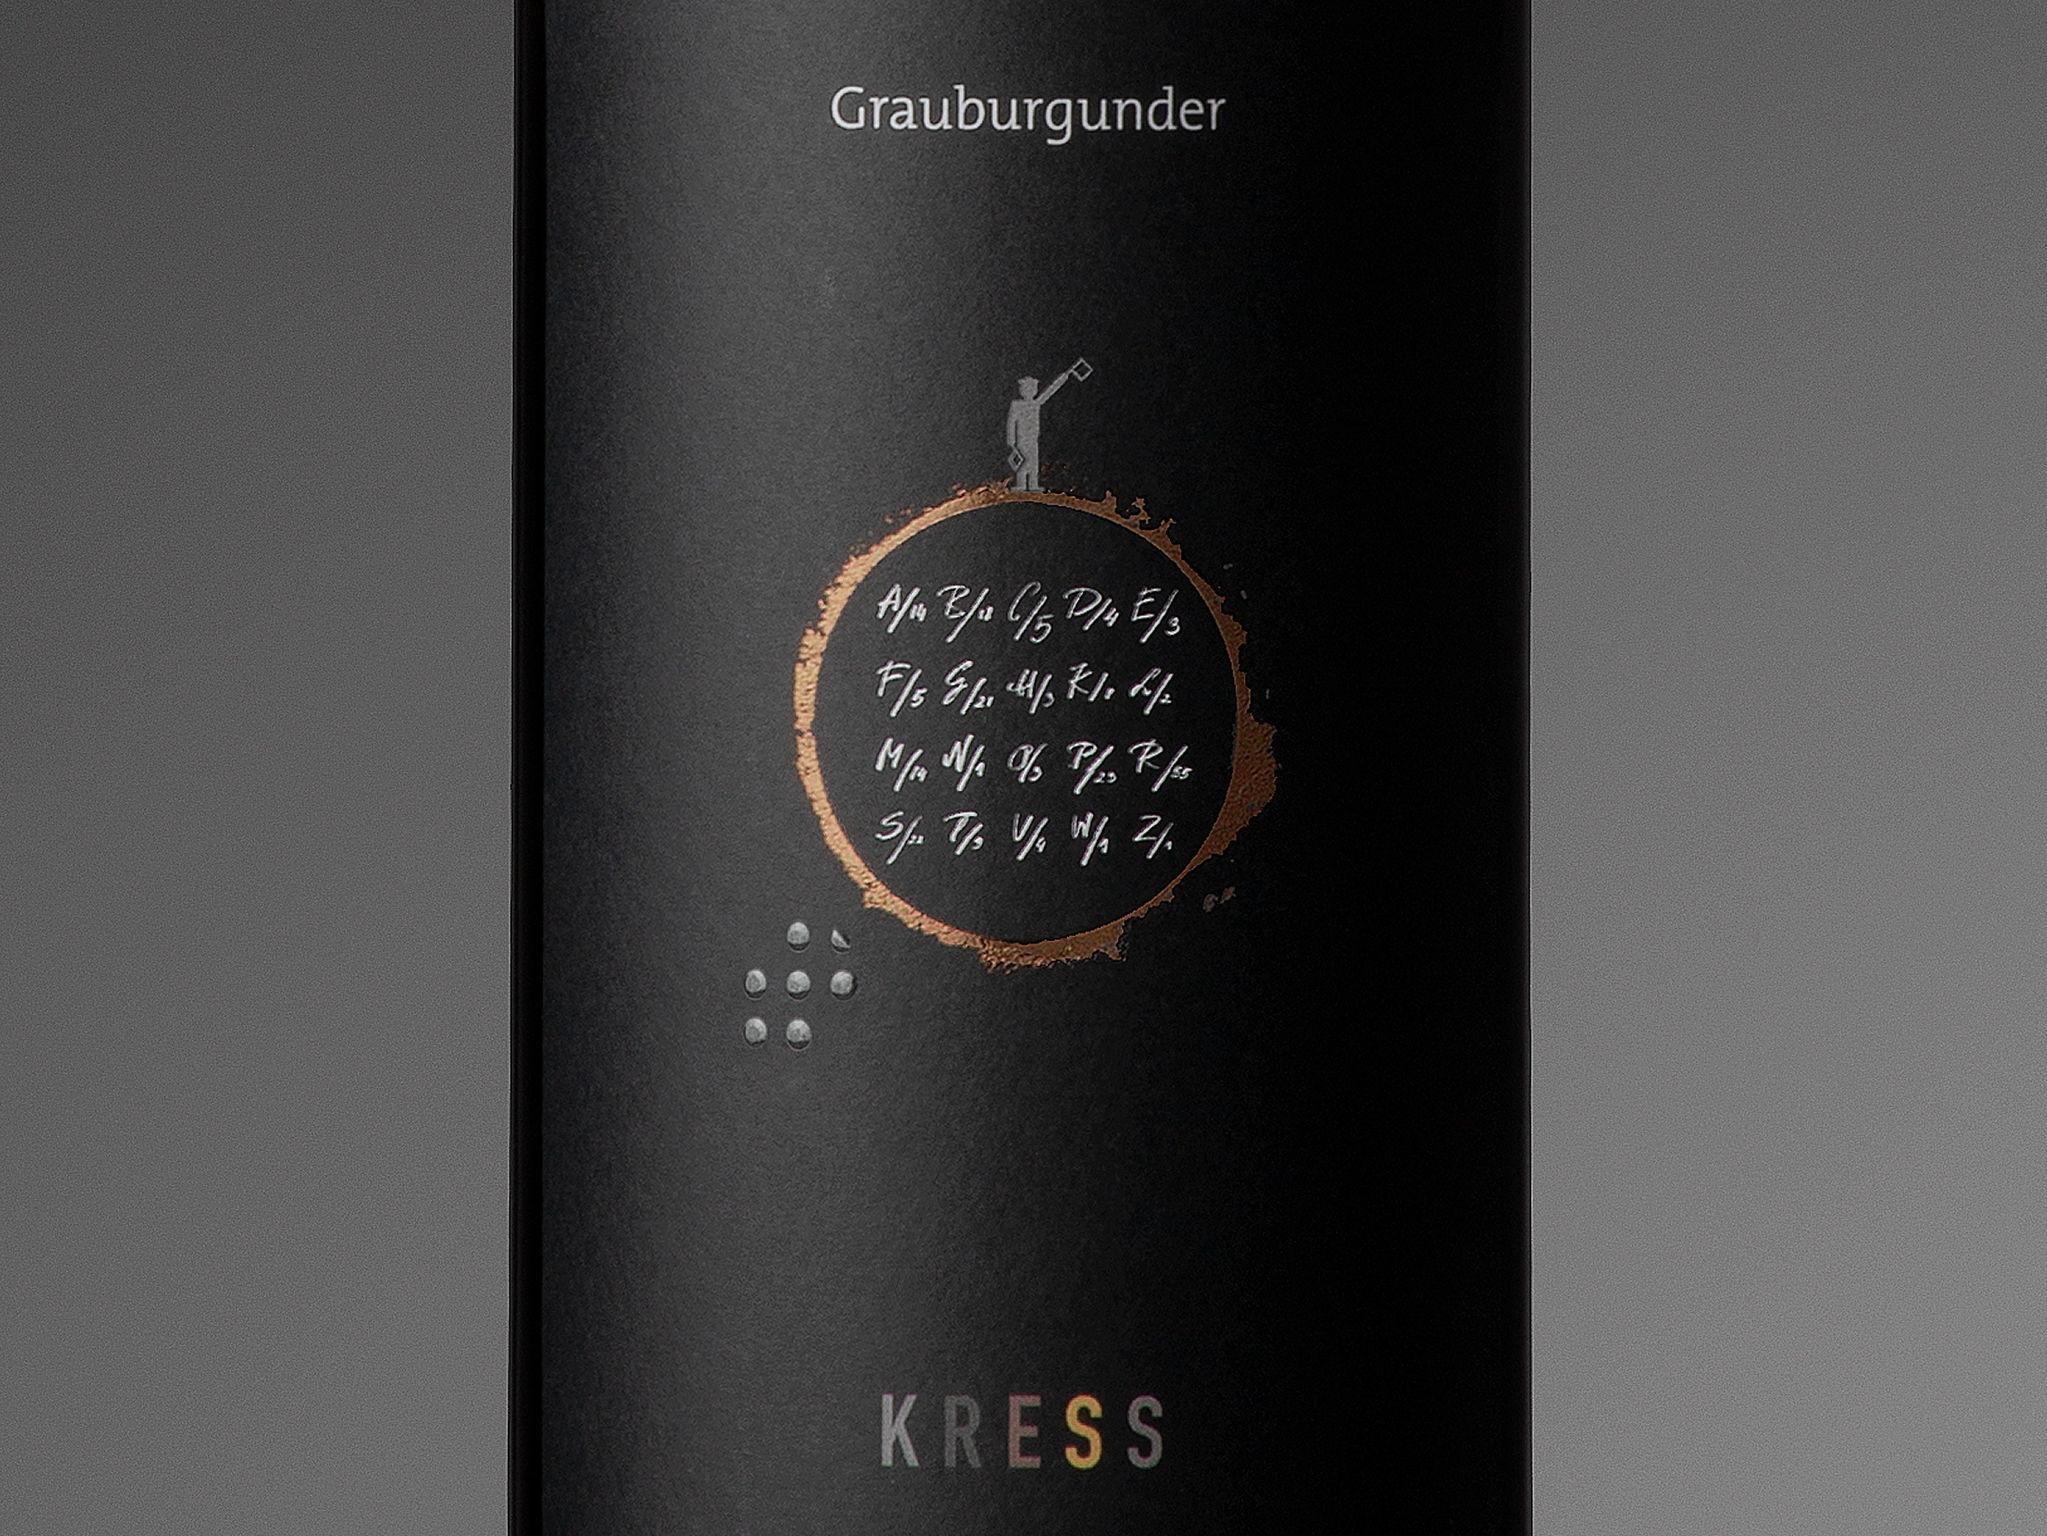 Label Design Grauburgunder Kress